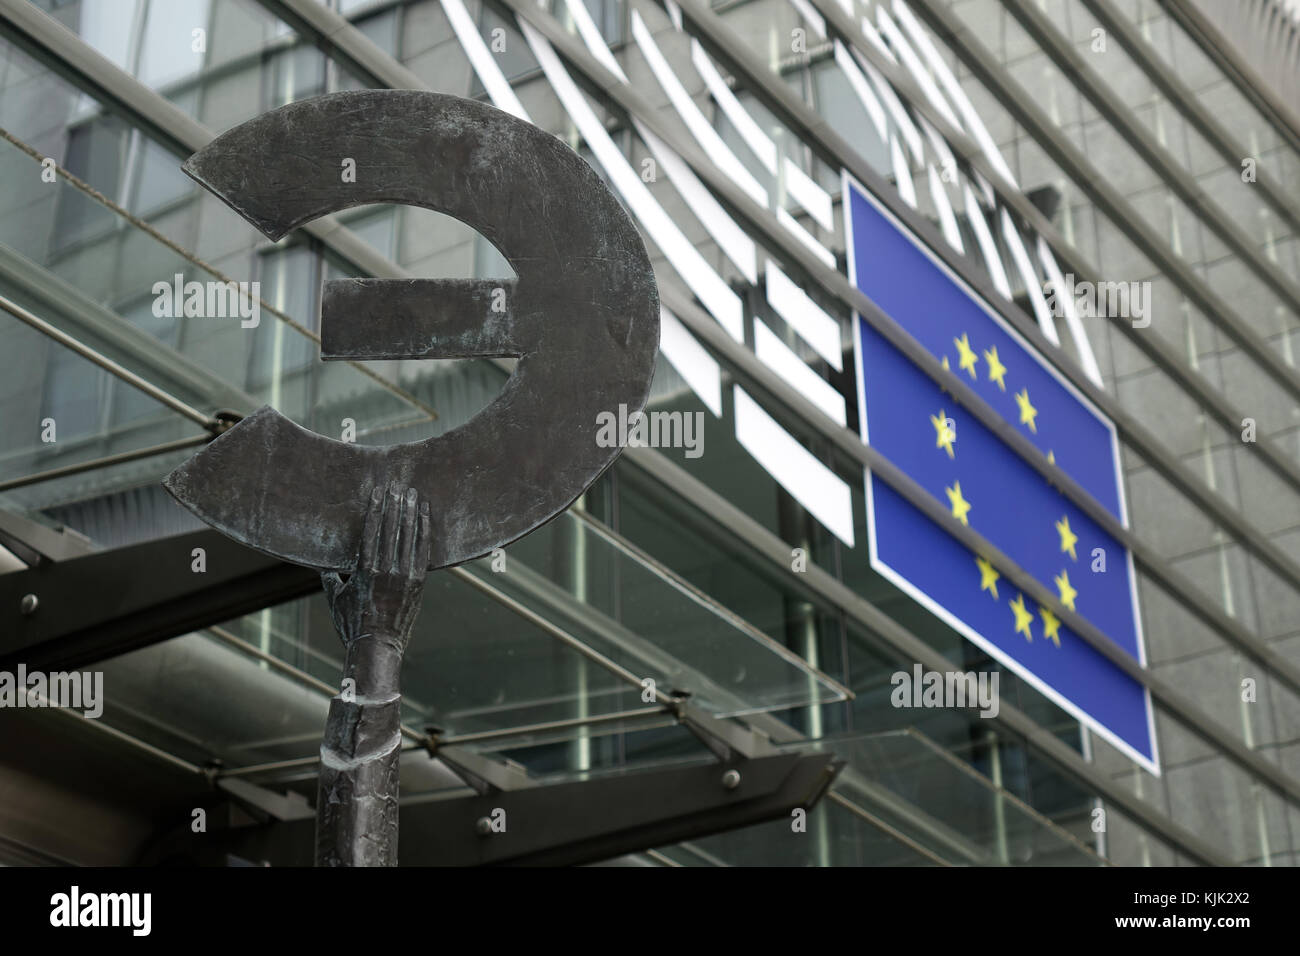 Un symbole de l'euro et le logo du Parlement européen à l'extérieur de l'édifice du parlement dans le quartier européen de la capitale belge Bruxelles, le 24.06.2017. le symbole euro est retardée par une statue en bronze de la déesse europa. Le logo du Parlement européen représente la salle plénière et le drapeau de l'UE. - Pas de service de fil - photo : Sascha steinach/dpa-zentralbild/dpa | conditions dans le monde entier Banque D'Images